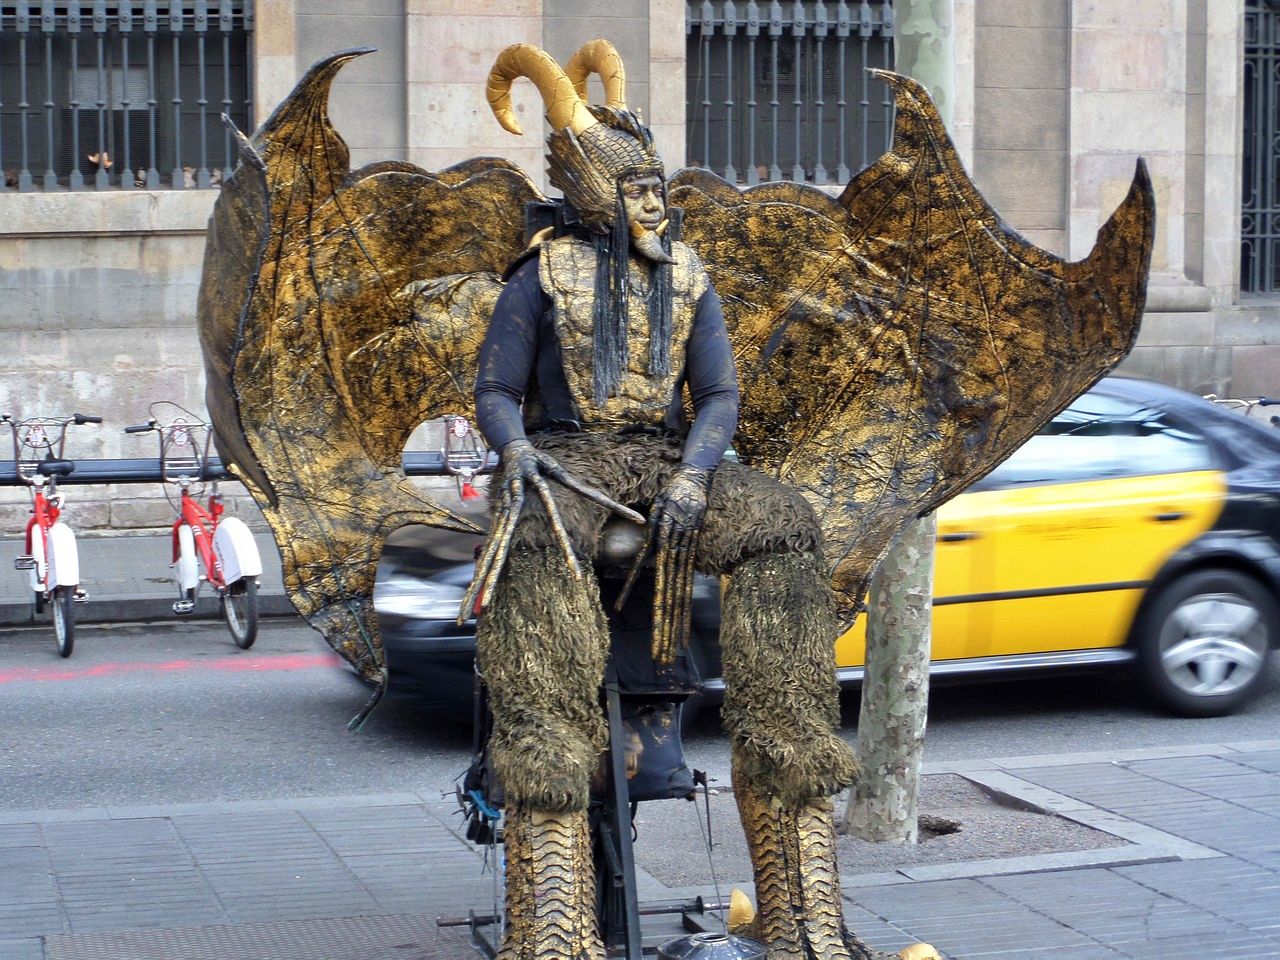 Human statue in La Rambla, Barcelona, Spain